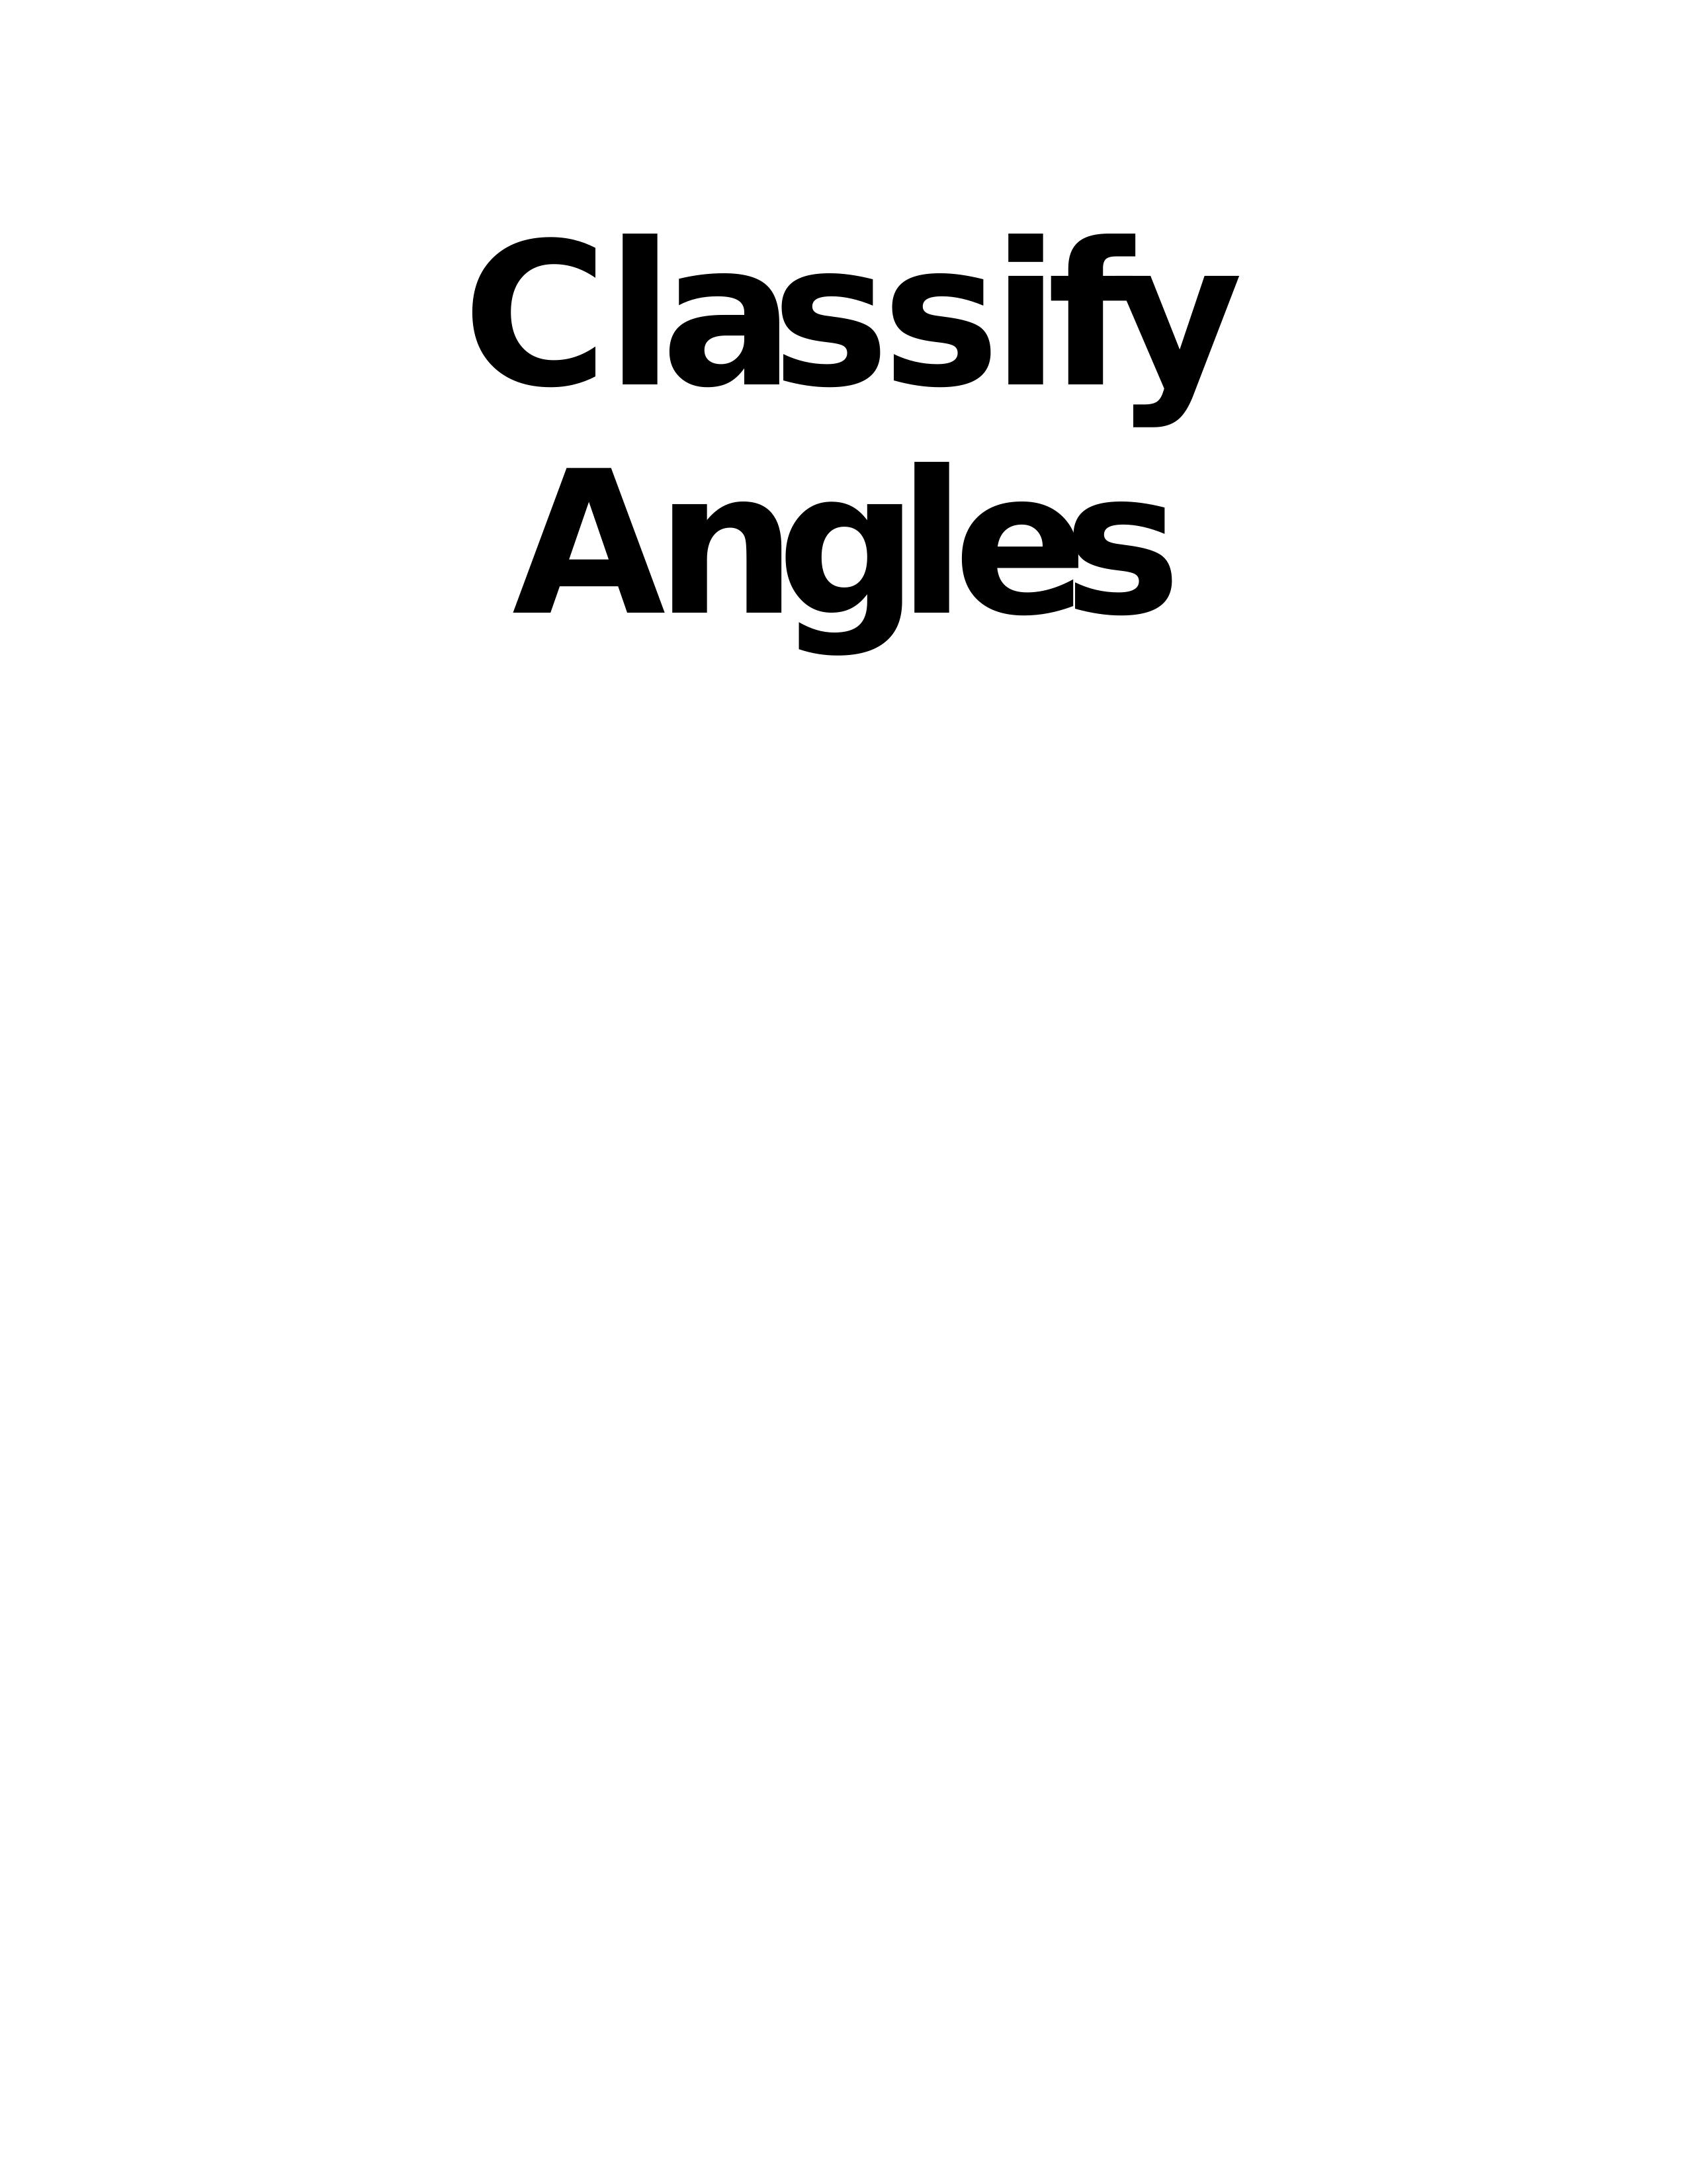 Angles - Grade 7 - Quizizz